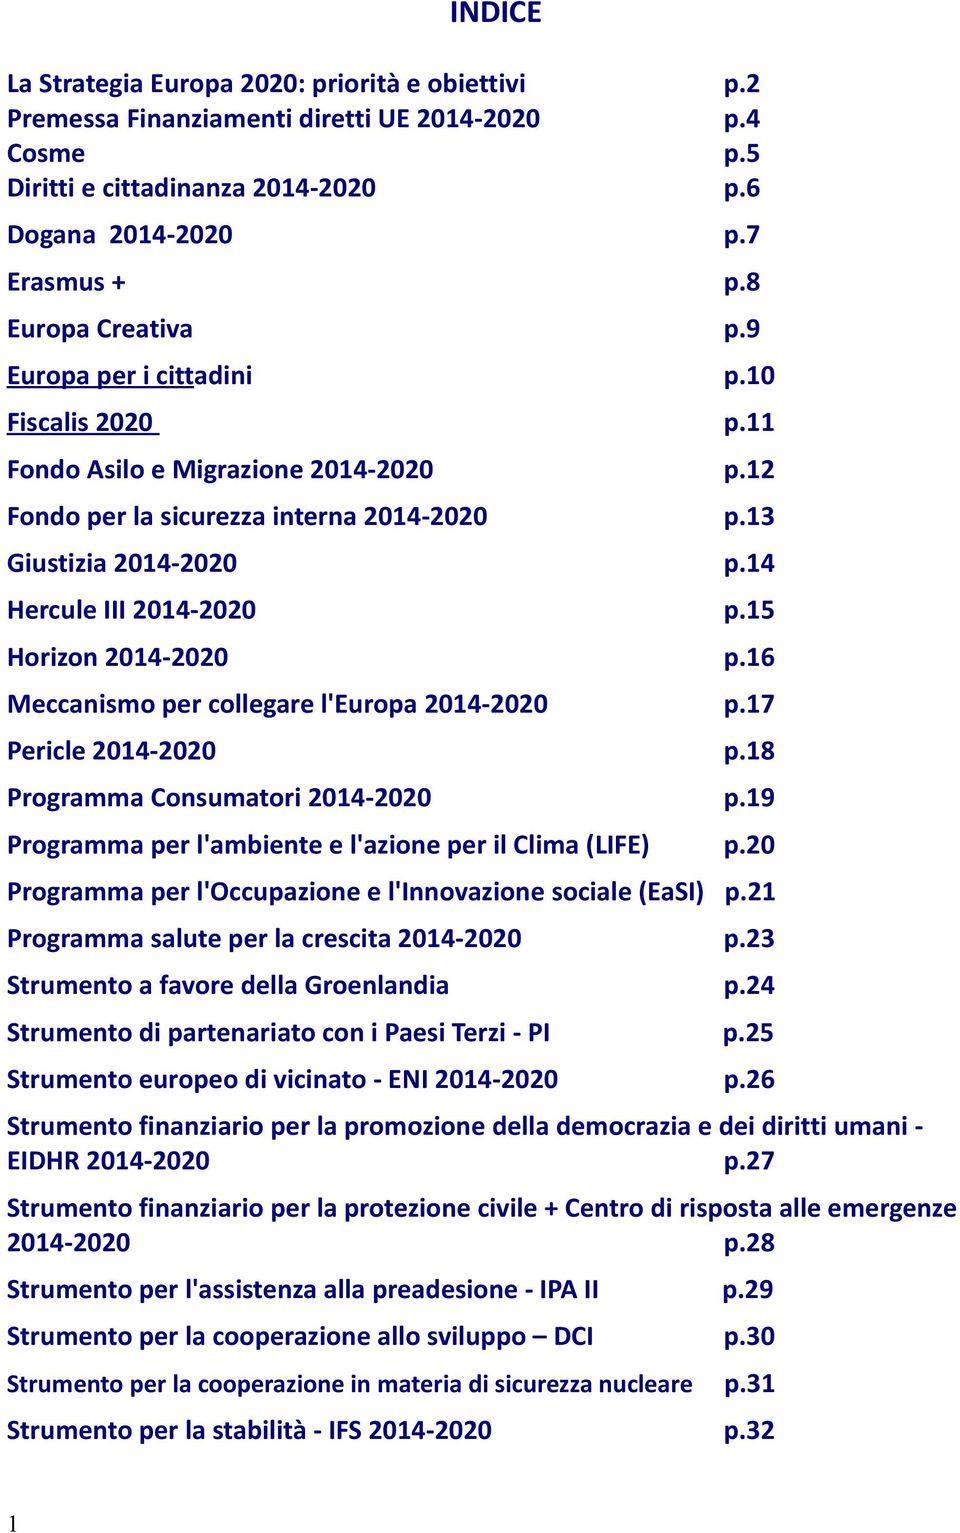 14 Hercule III 2014-2020 p.15 Horizon 2014-2020 p.16 Meccanismo per collegare l'europa 2014-2020 p.17 Pericle 2014-2020 p.18 Programma Consumatori 2014-2020 p.